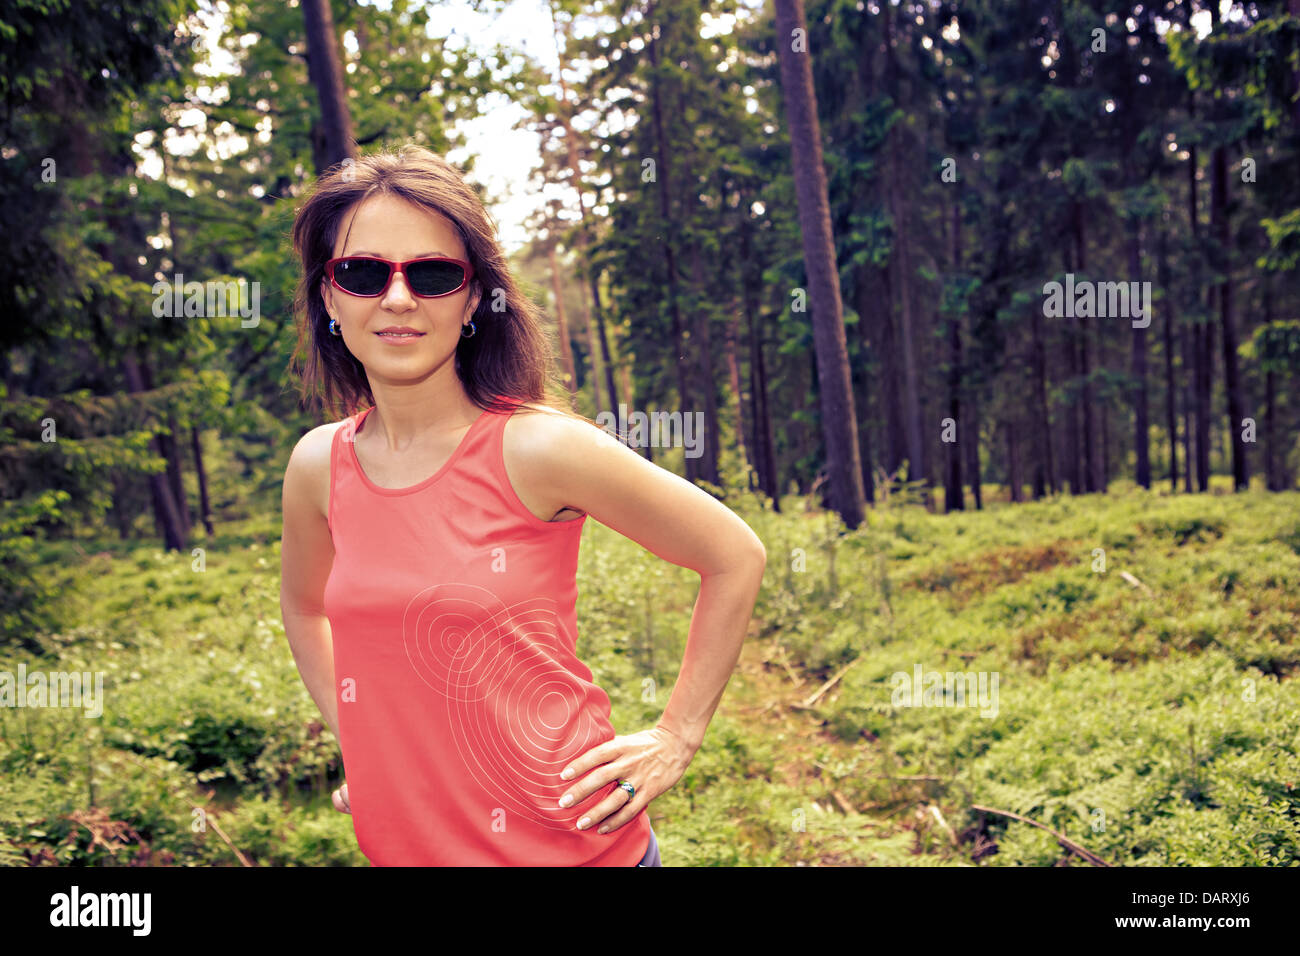 Young woman jogging dans une forêt Banque D'Images